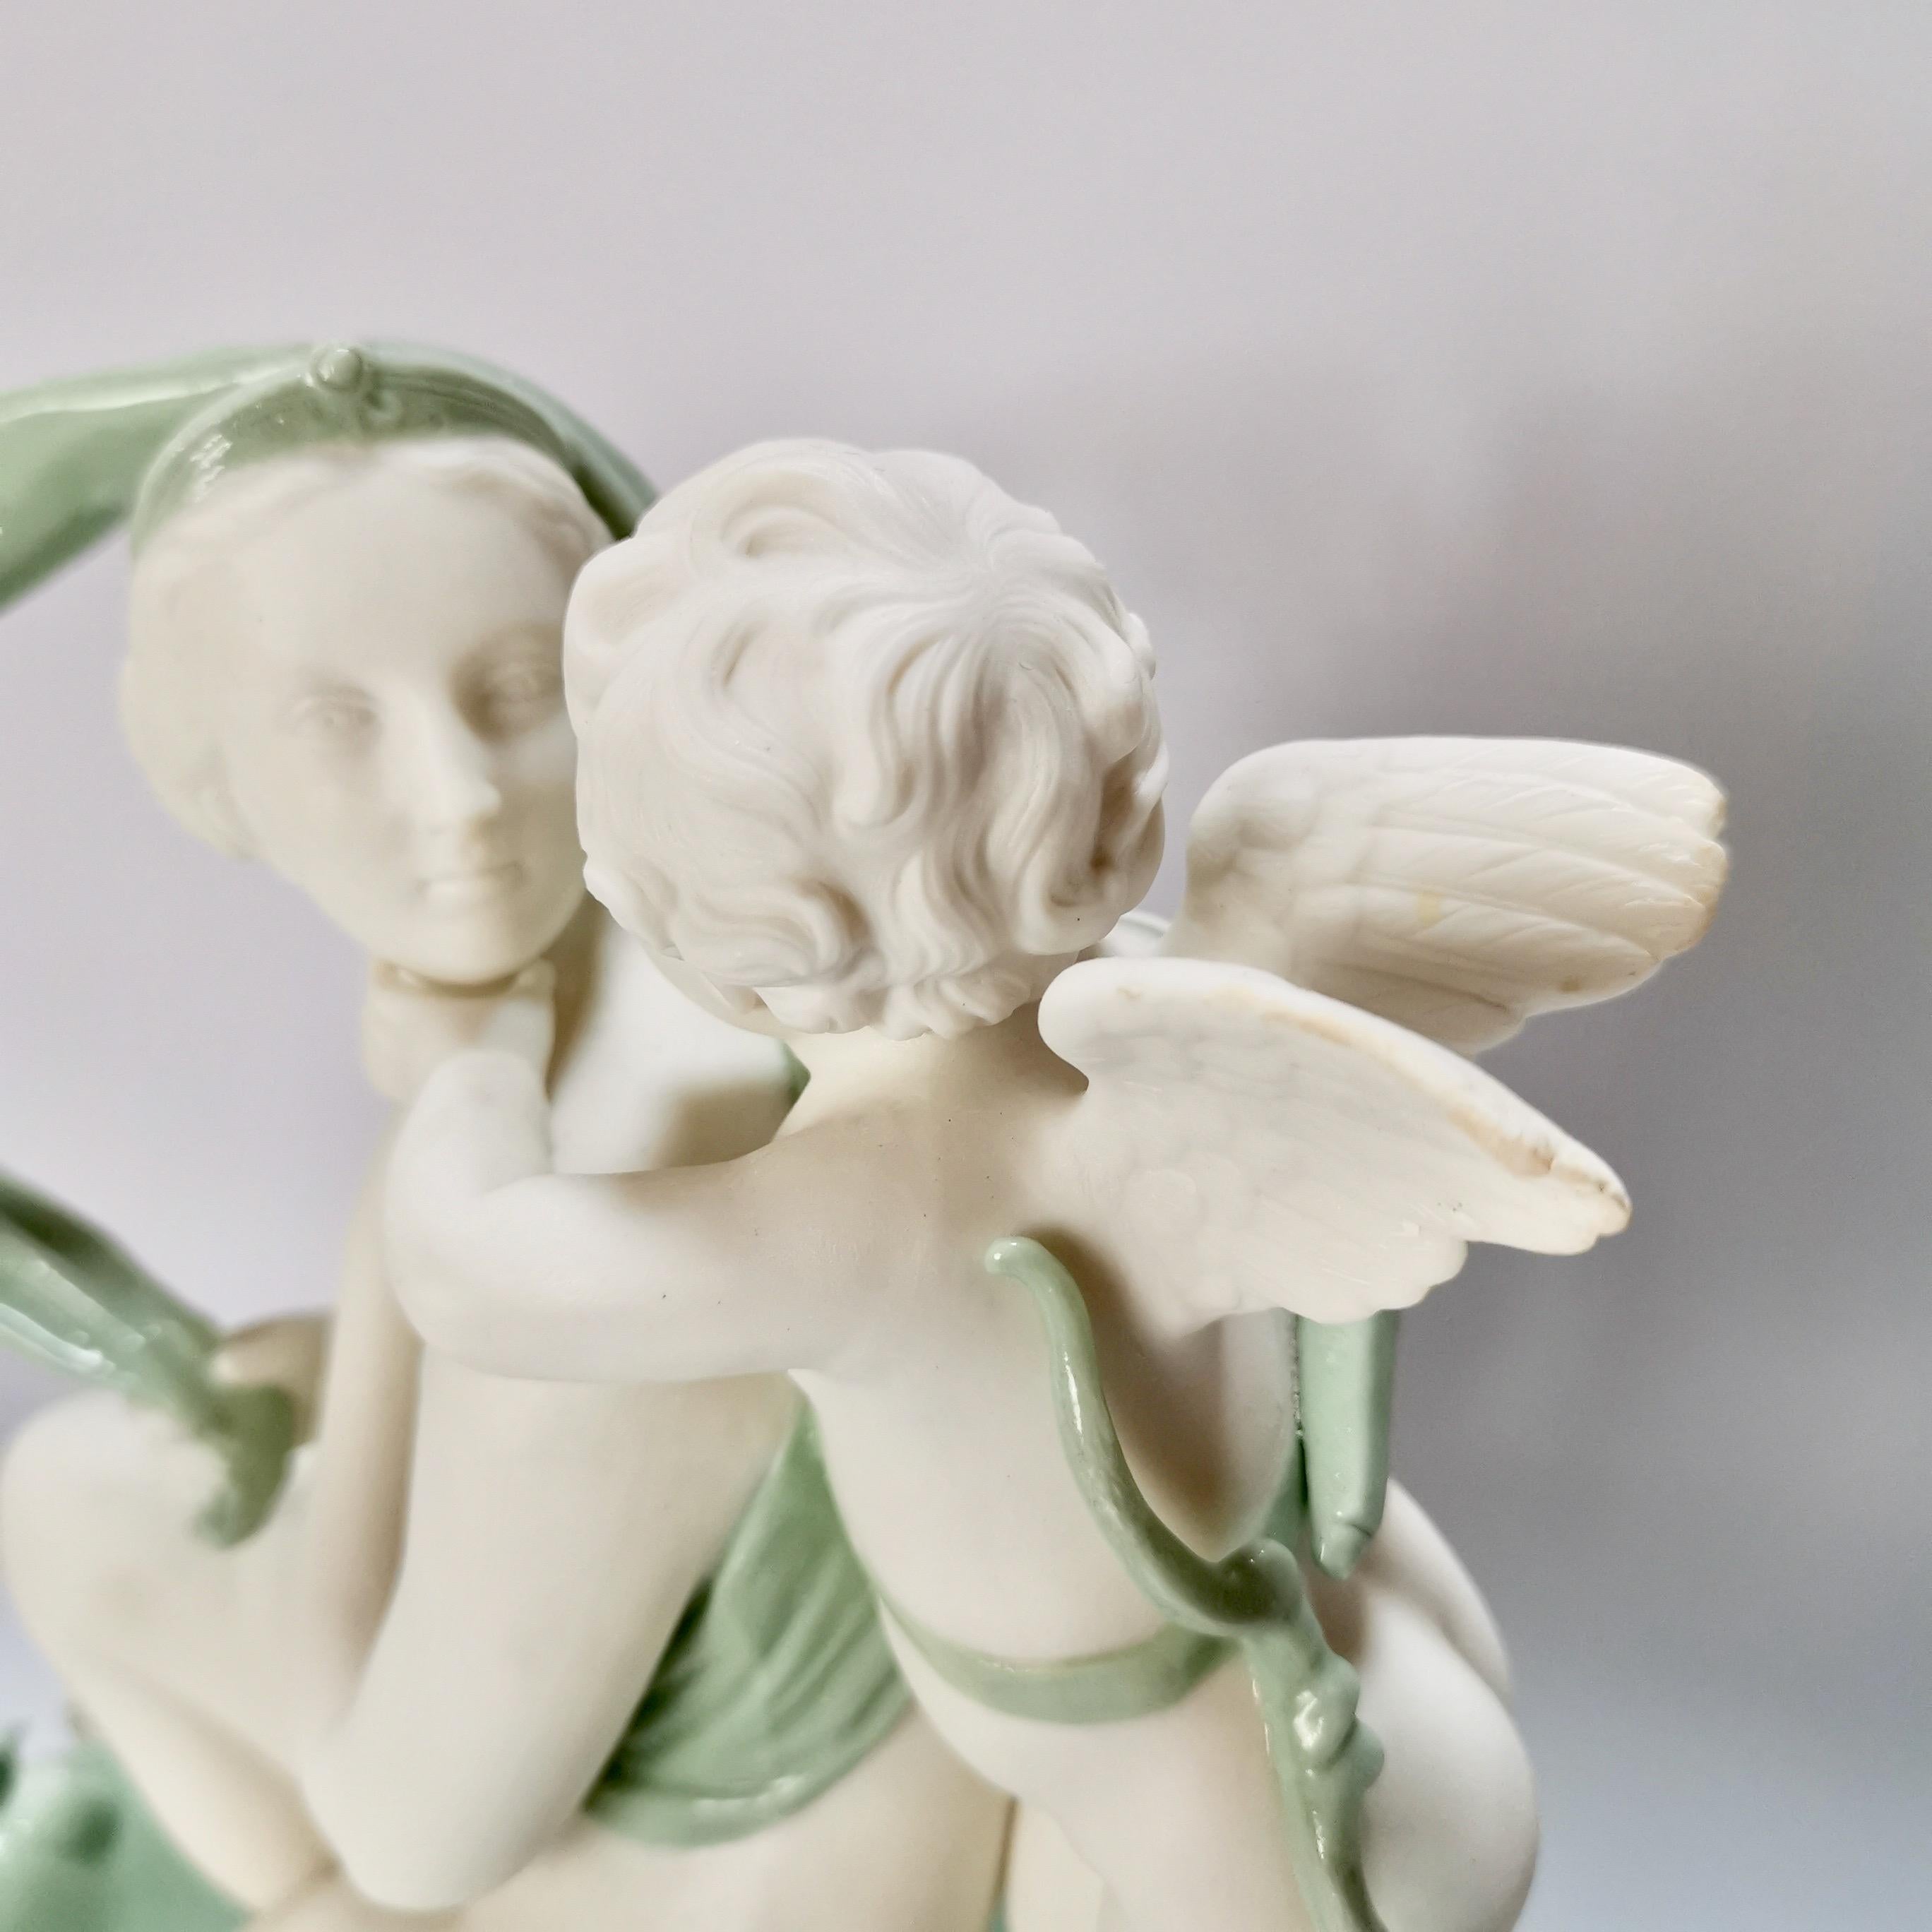 Minton Celadon Parian Porcelain Sculpture, Venus and Cupid, Victorian, 1861 For Sale 1